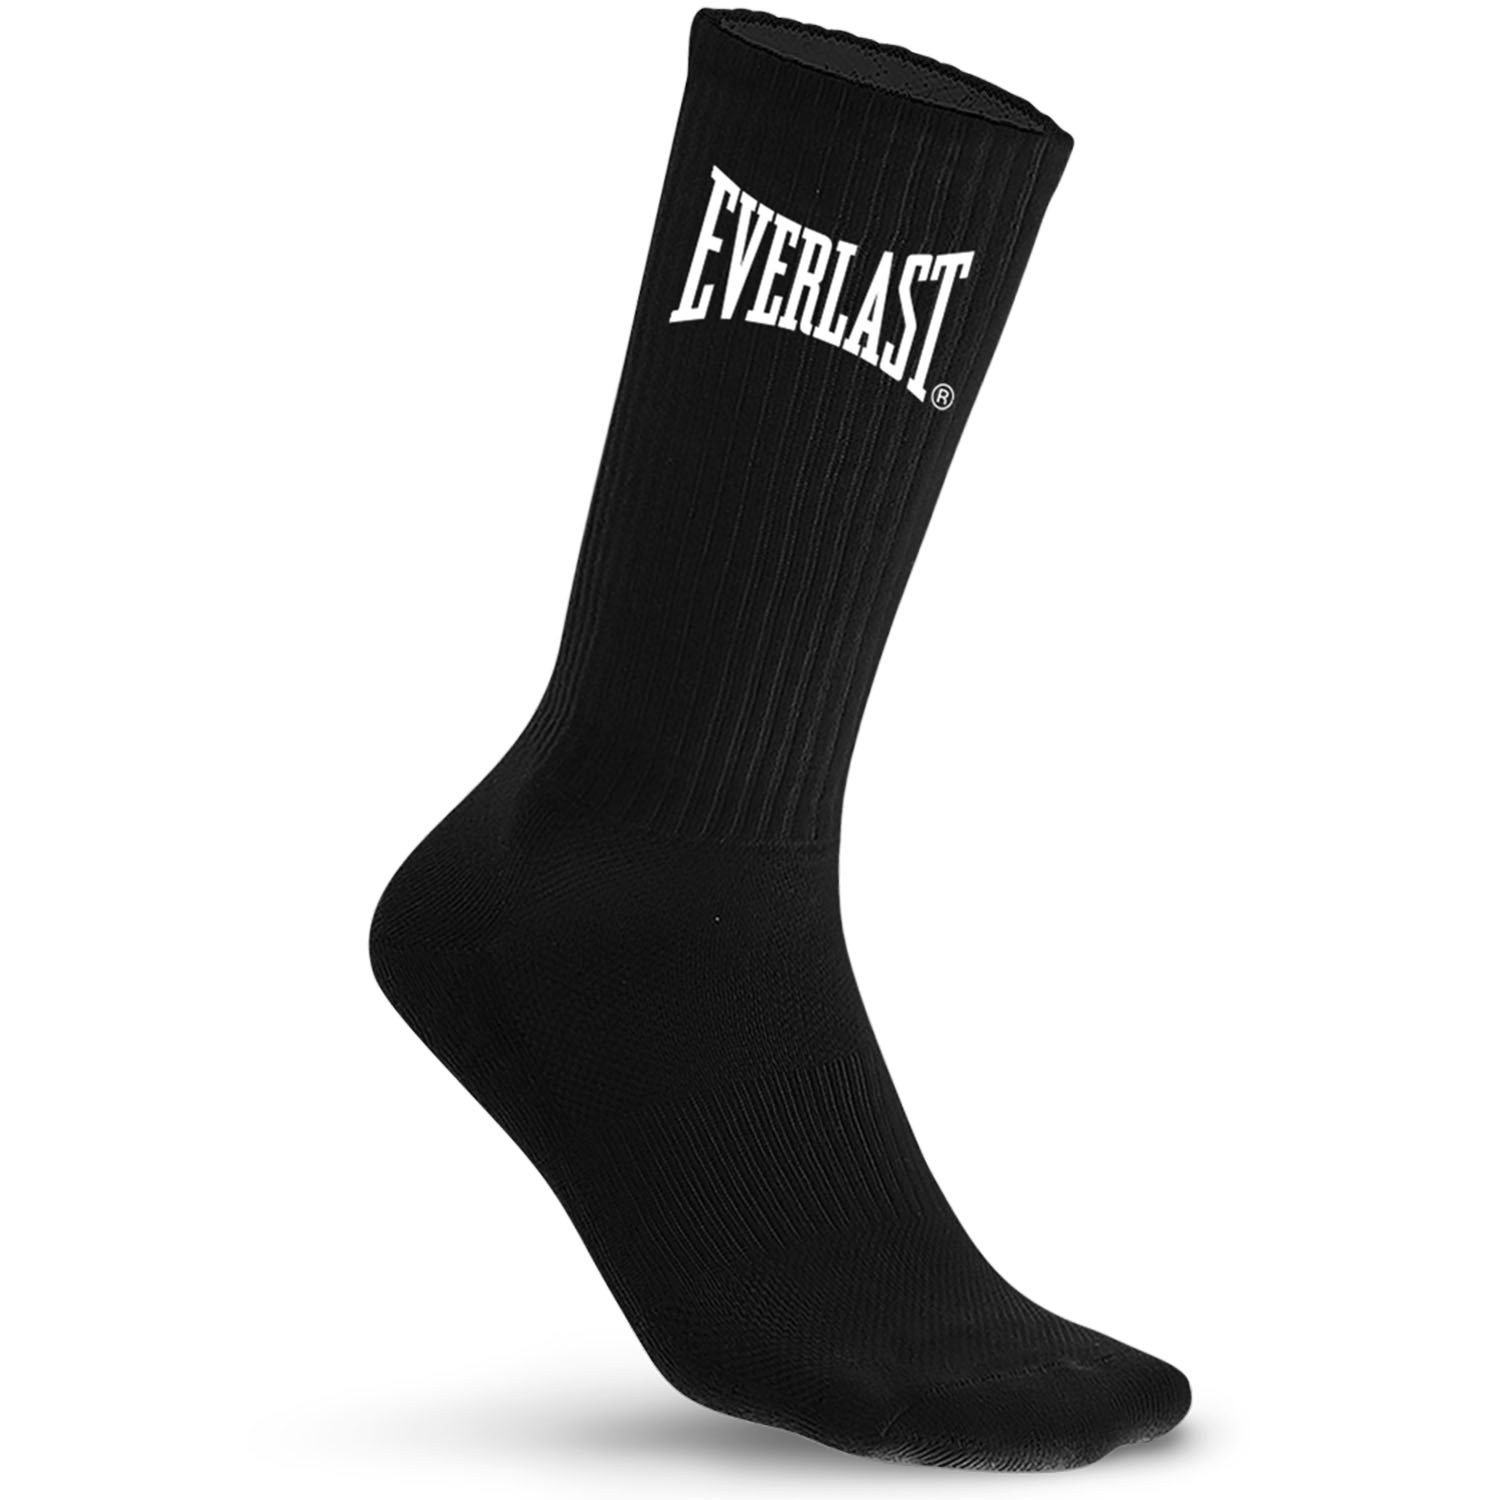 Everlast Socken, 10er Pack, schwarz, 39-42